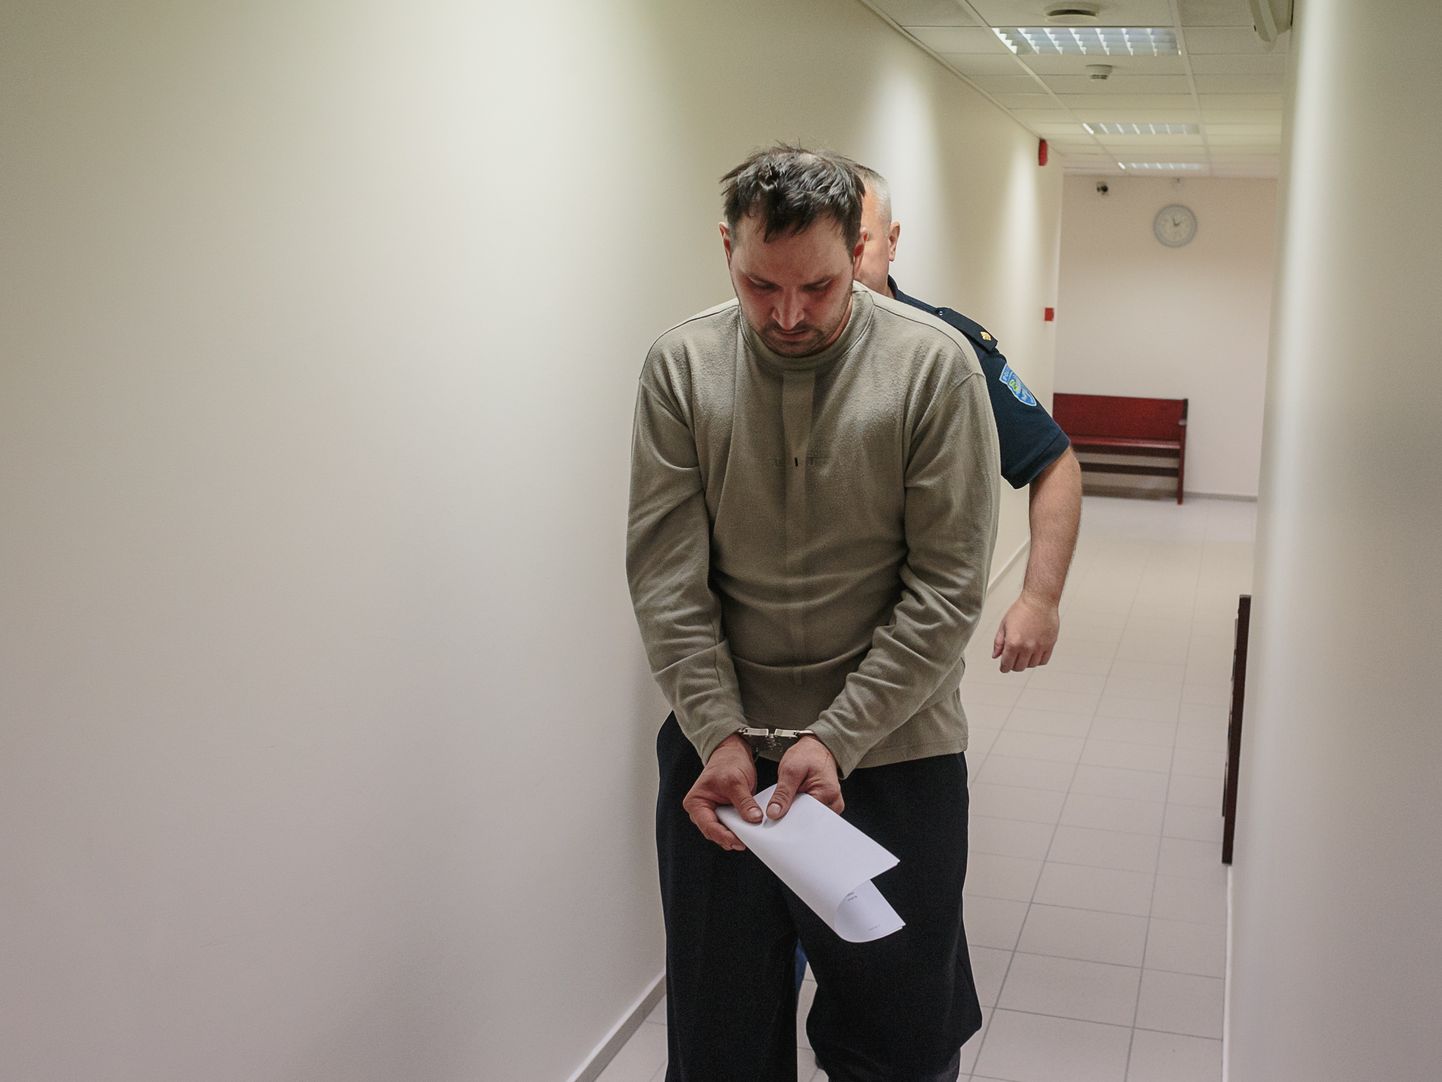 Сергей Голубев после задержания в качестве подозреваемого в преступлении в апреле 2018 года в Нарвском доме суда Вируского уездного суда.